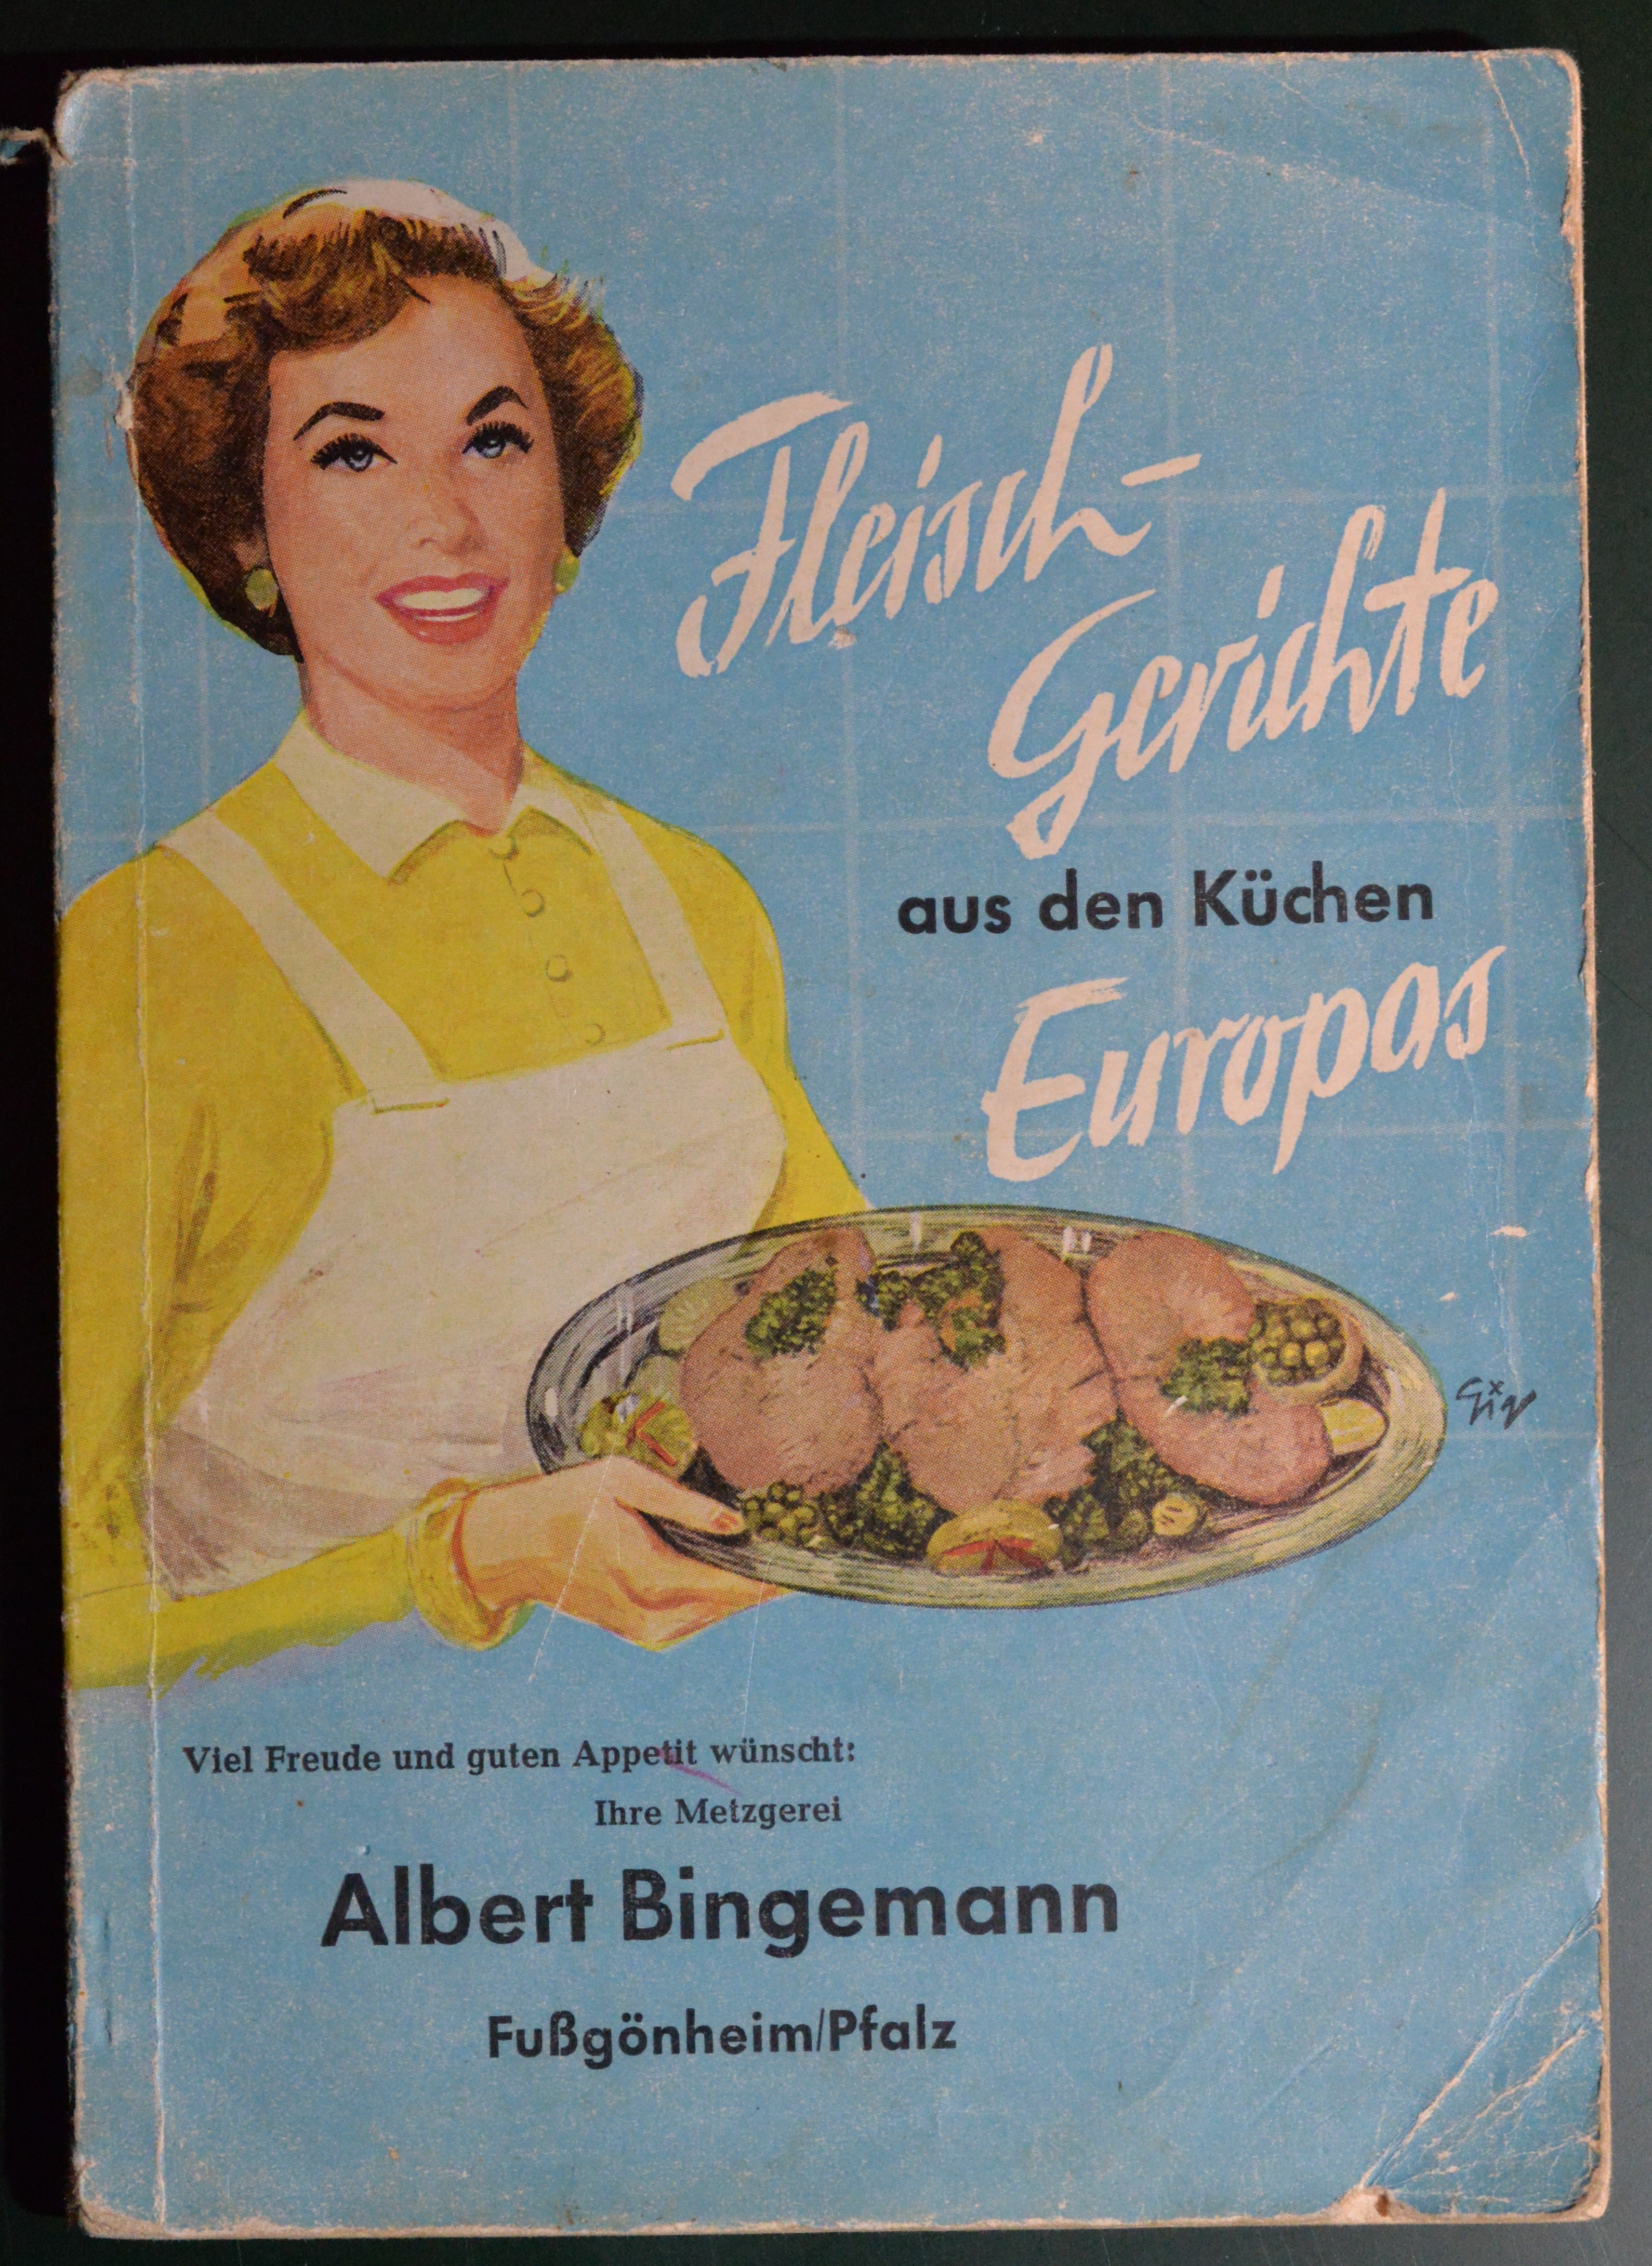 Fleischgerichte aus den Küchen Europas (HKK CC BY-NC-SA)